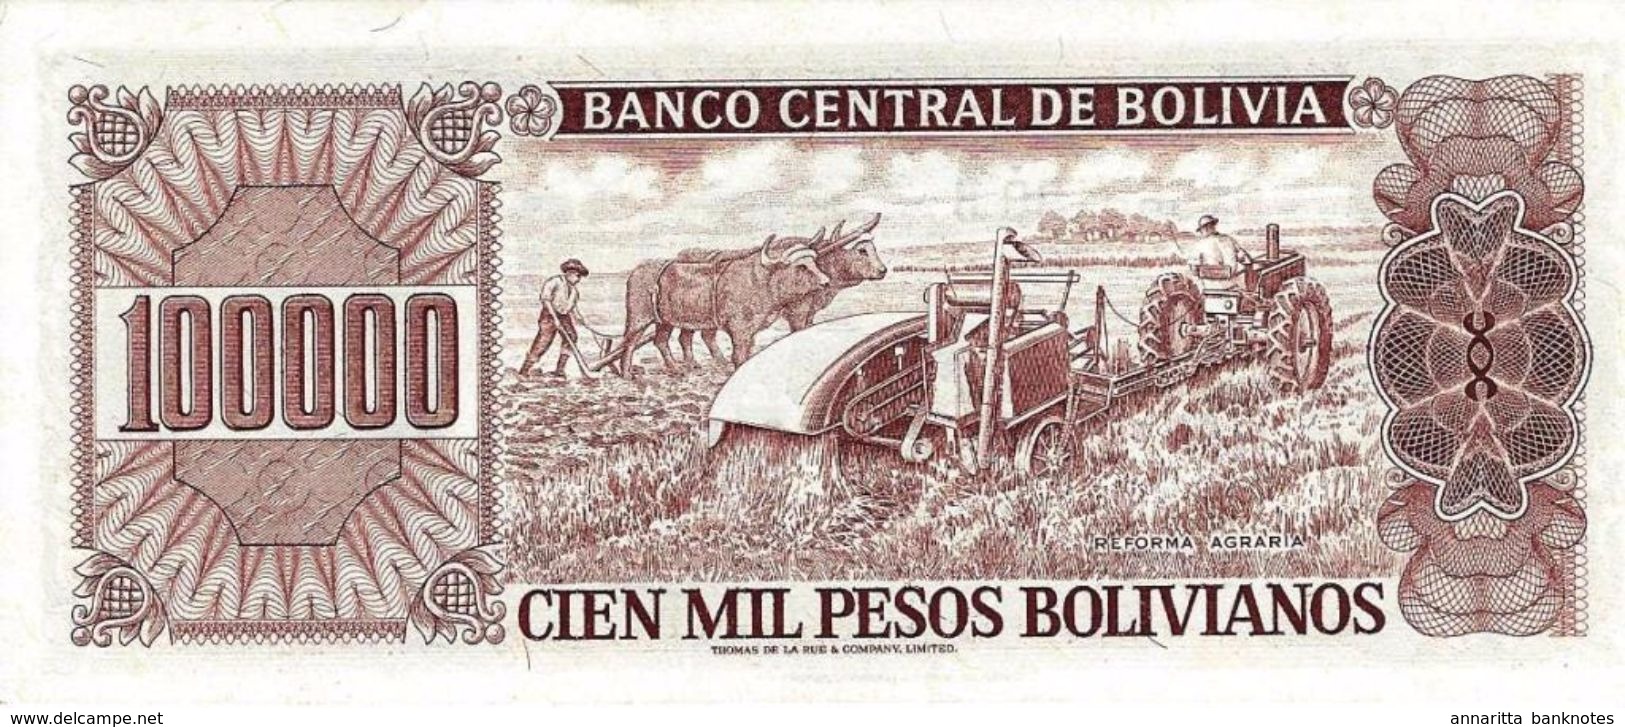 Bolivia (BCB) 100000 Pesos Bolivianos 1984 UNC Cat No. P-171a1 / BO357a - Bolivia